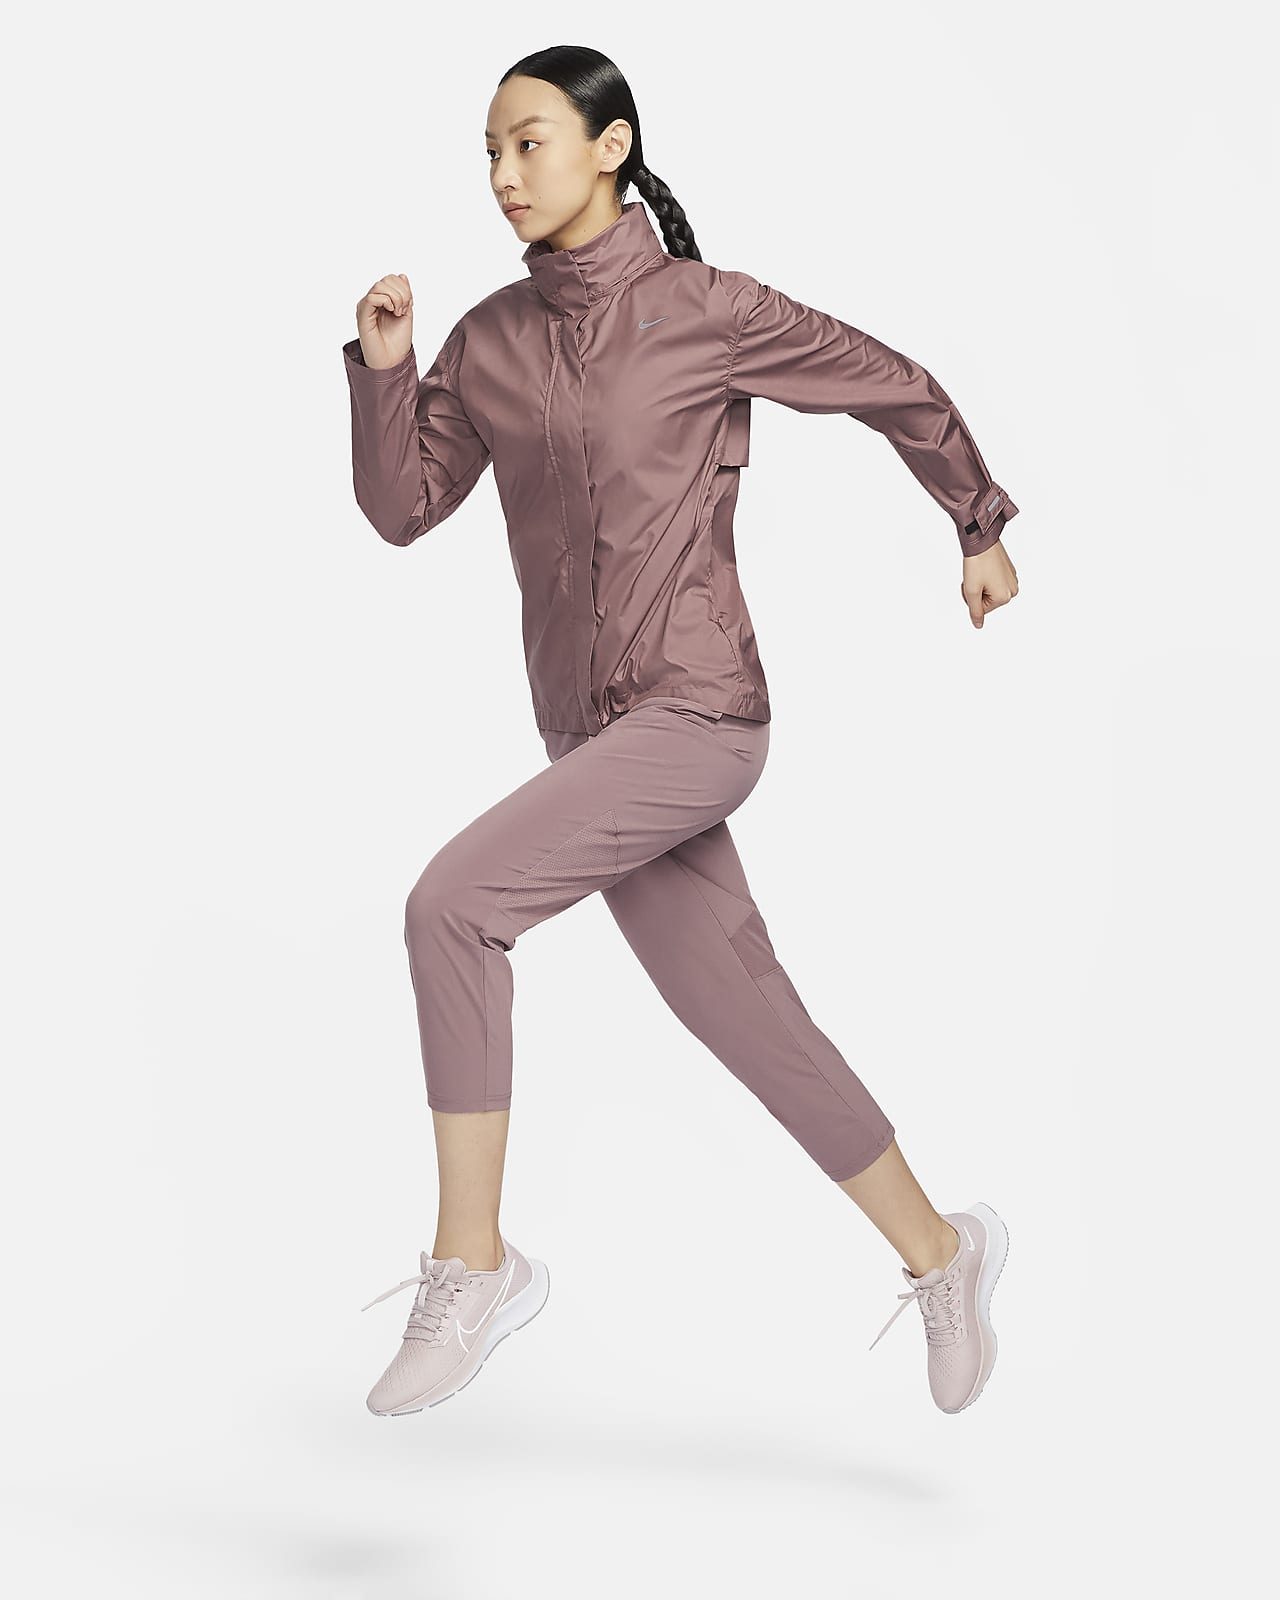 NIKE เลกกิ้งผู้หญิงสำหรับวิ่ง ขาลอยเอวปานกลาง รุ่น Fast CZ9239-655, ลด  30.31%